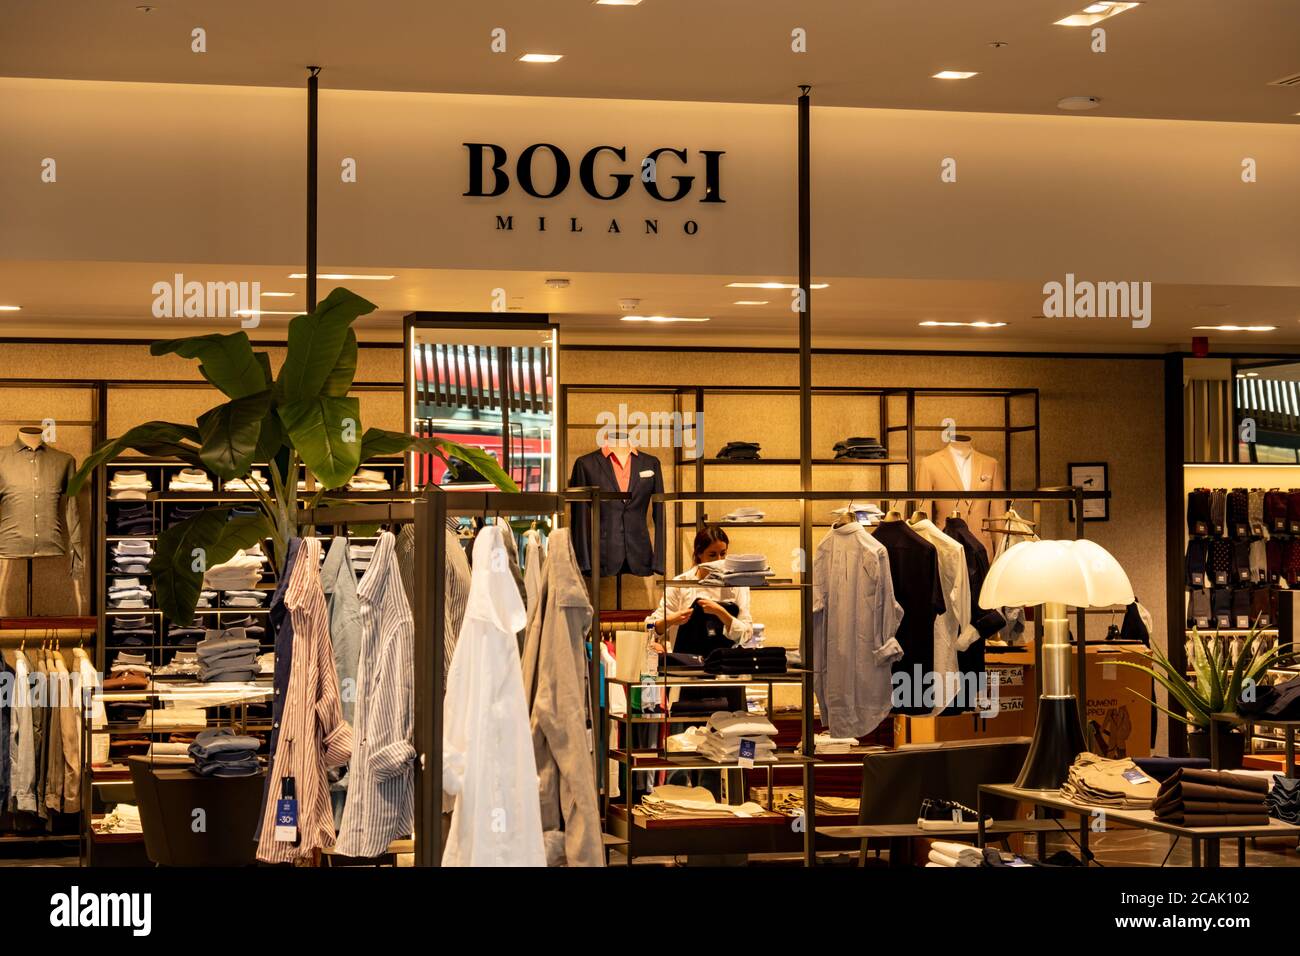 London - Boggi Milano Store Interior in der Regent Street, einer italienischen Modemarke Stockfoto